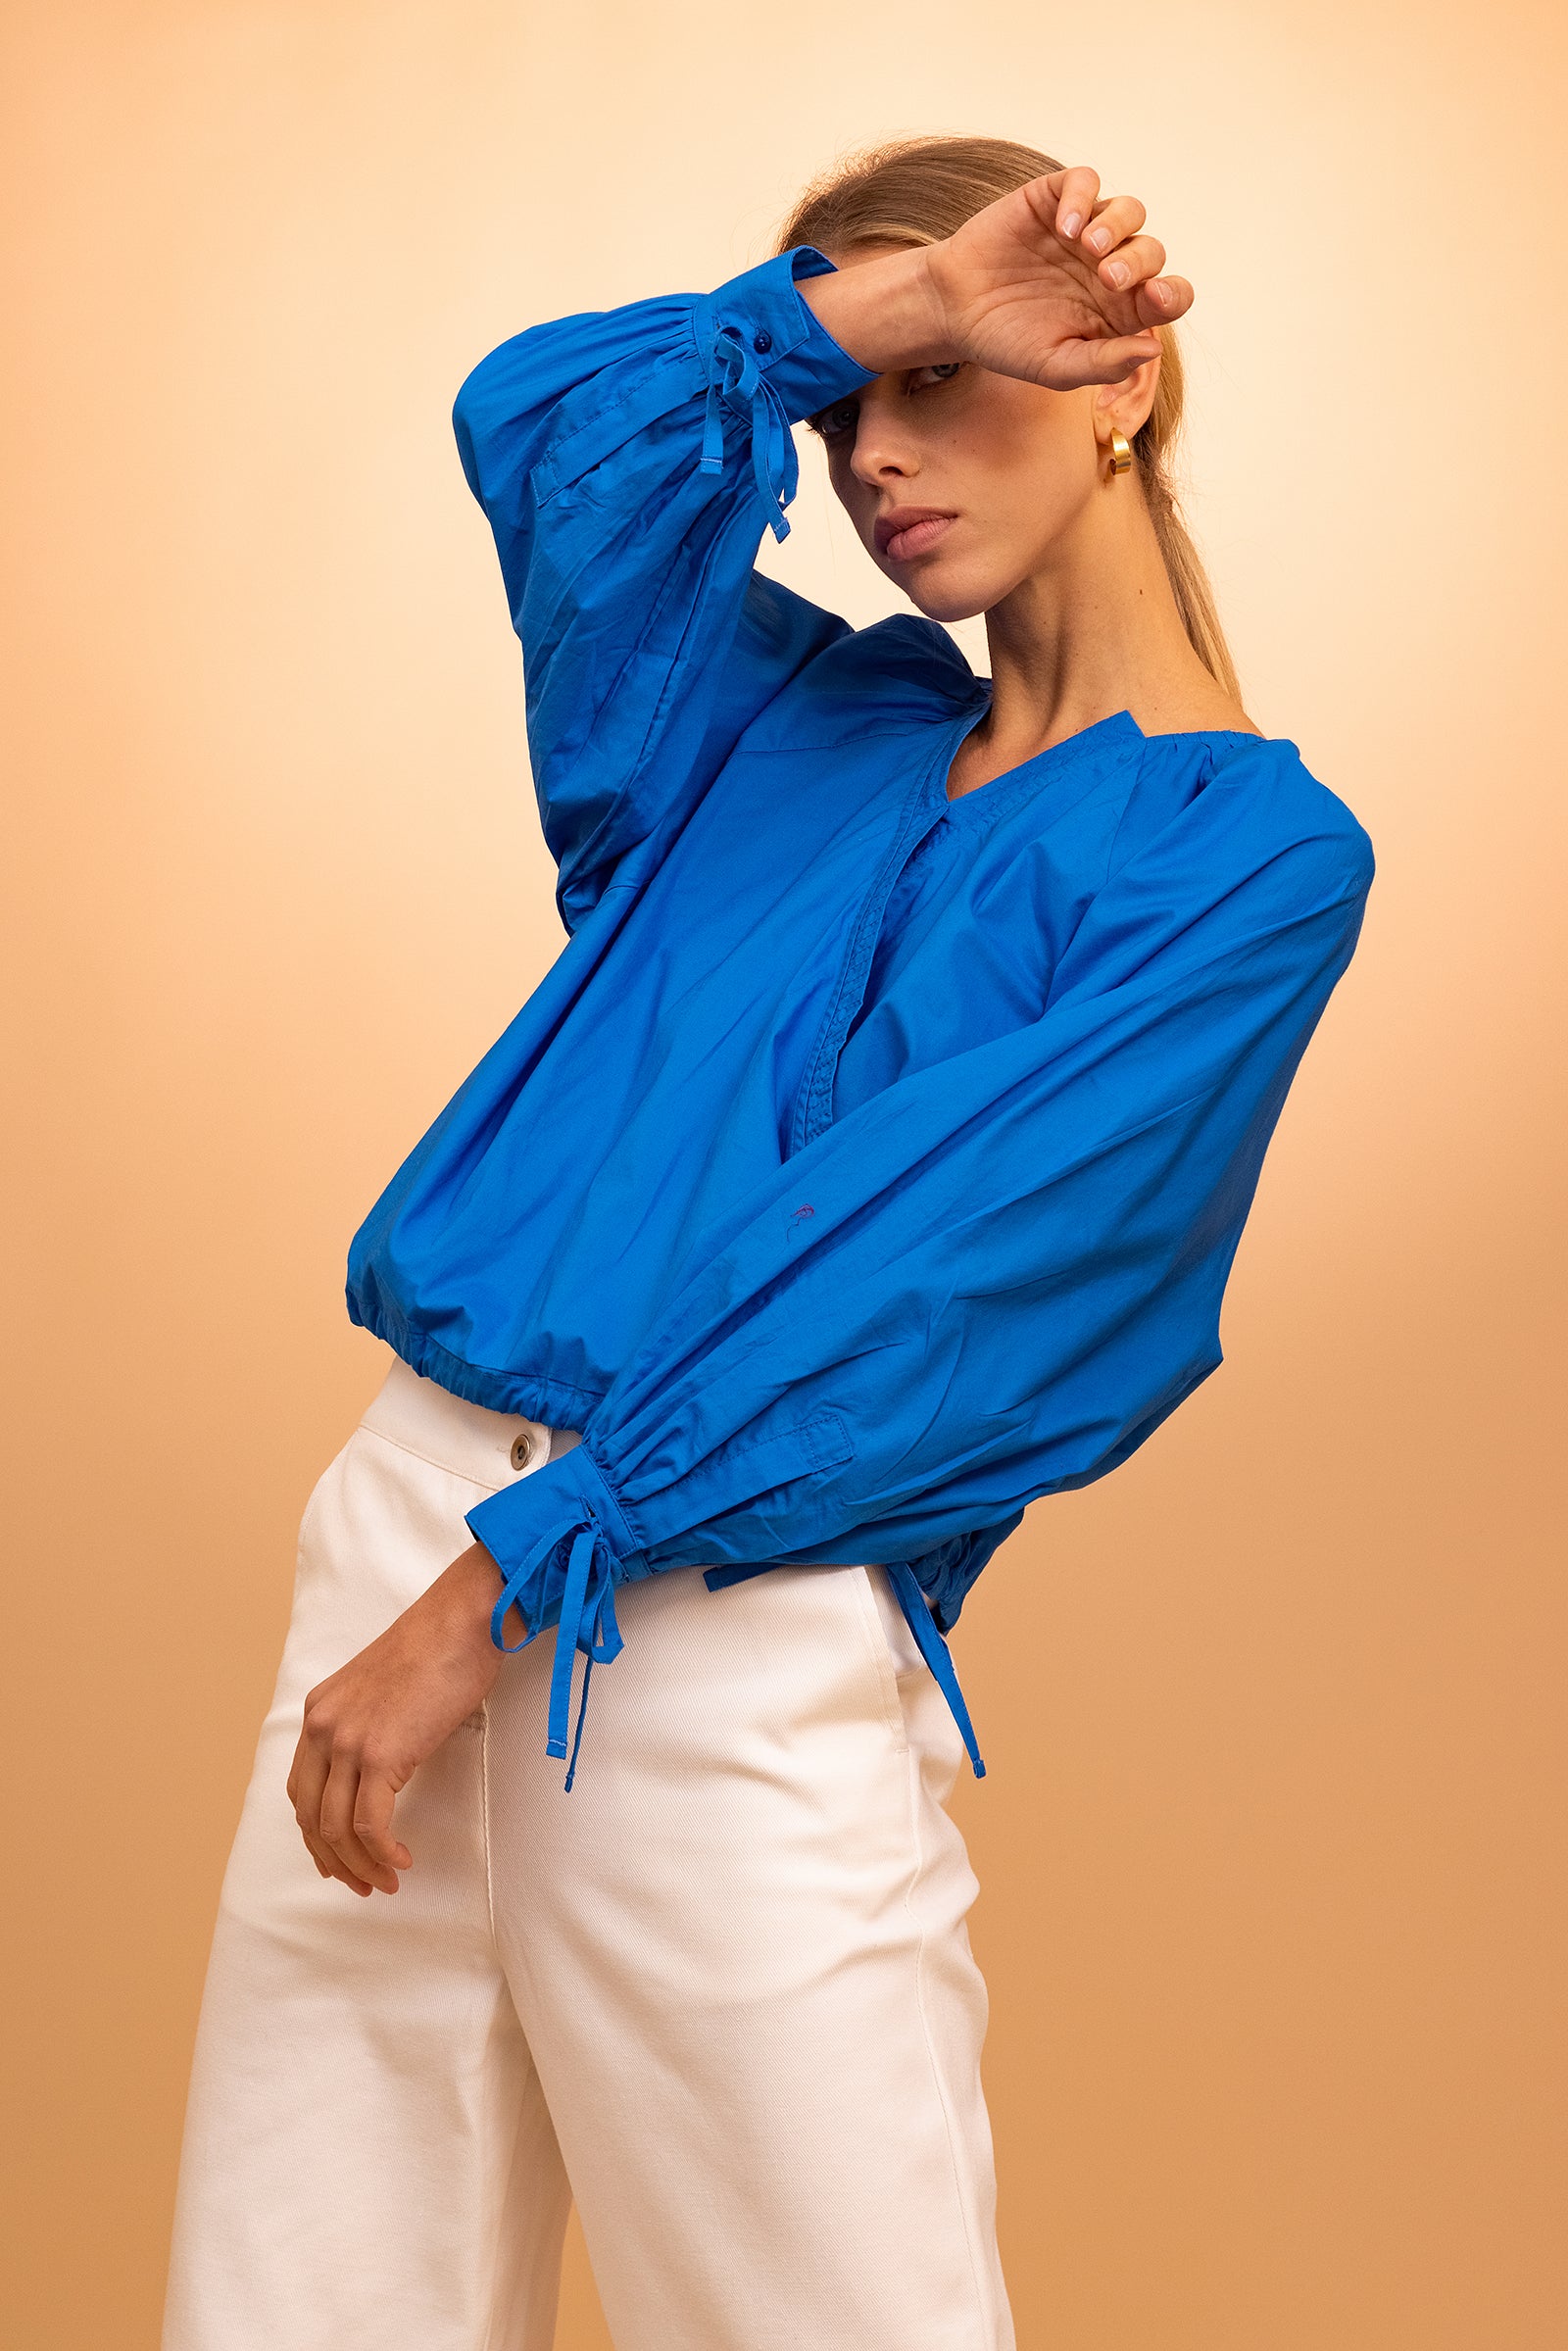 femme portant Chemise Alala Bleu misericordia lima perou élégance été confort design douceur féminité sobriété légèreté manches oversize